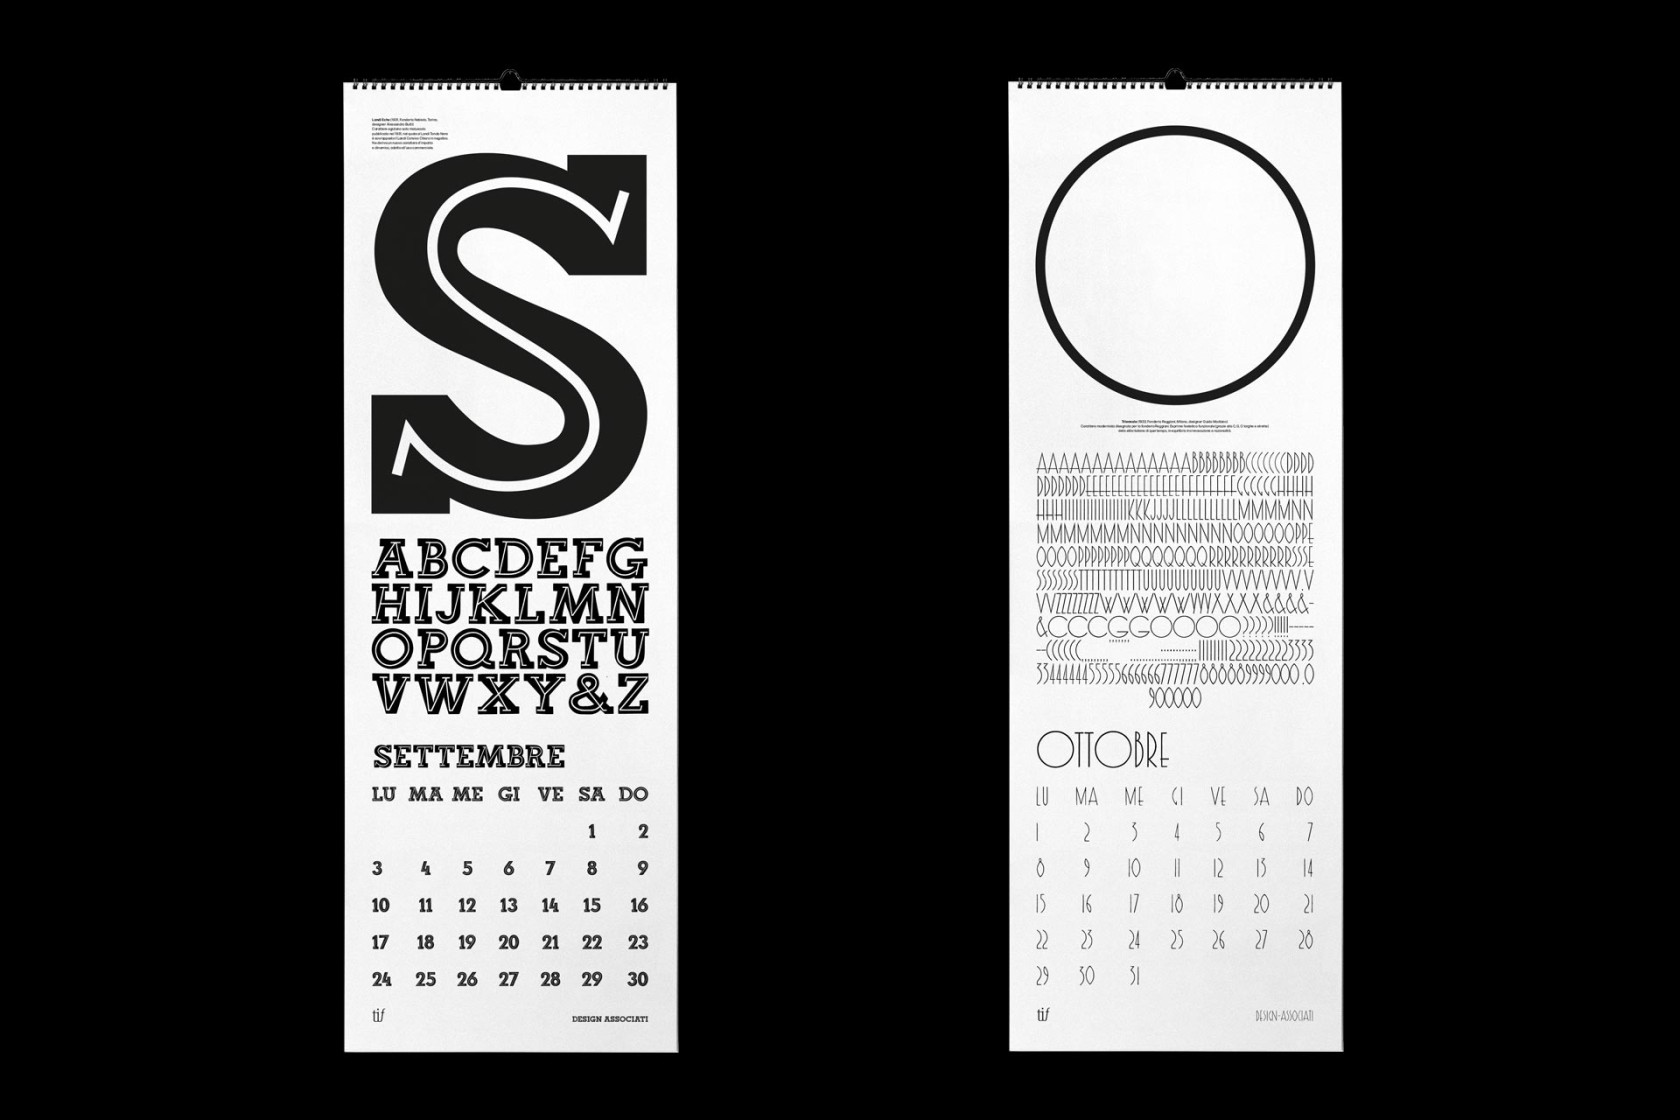 Calendario Tipoteca 2018 dettaglio 